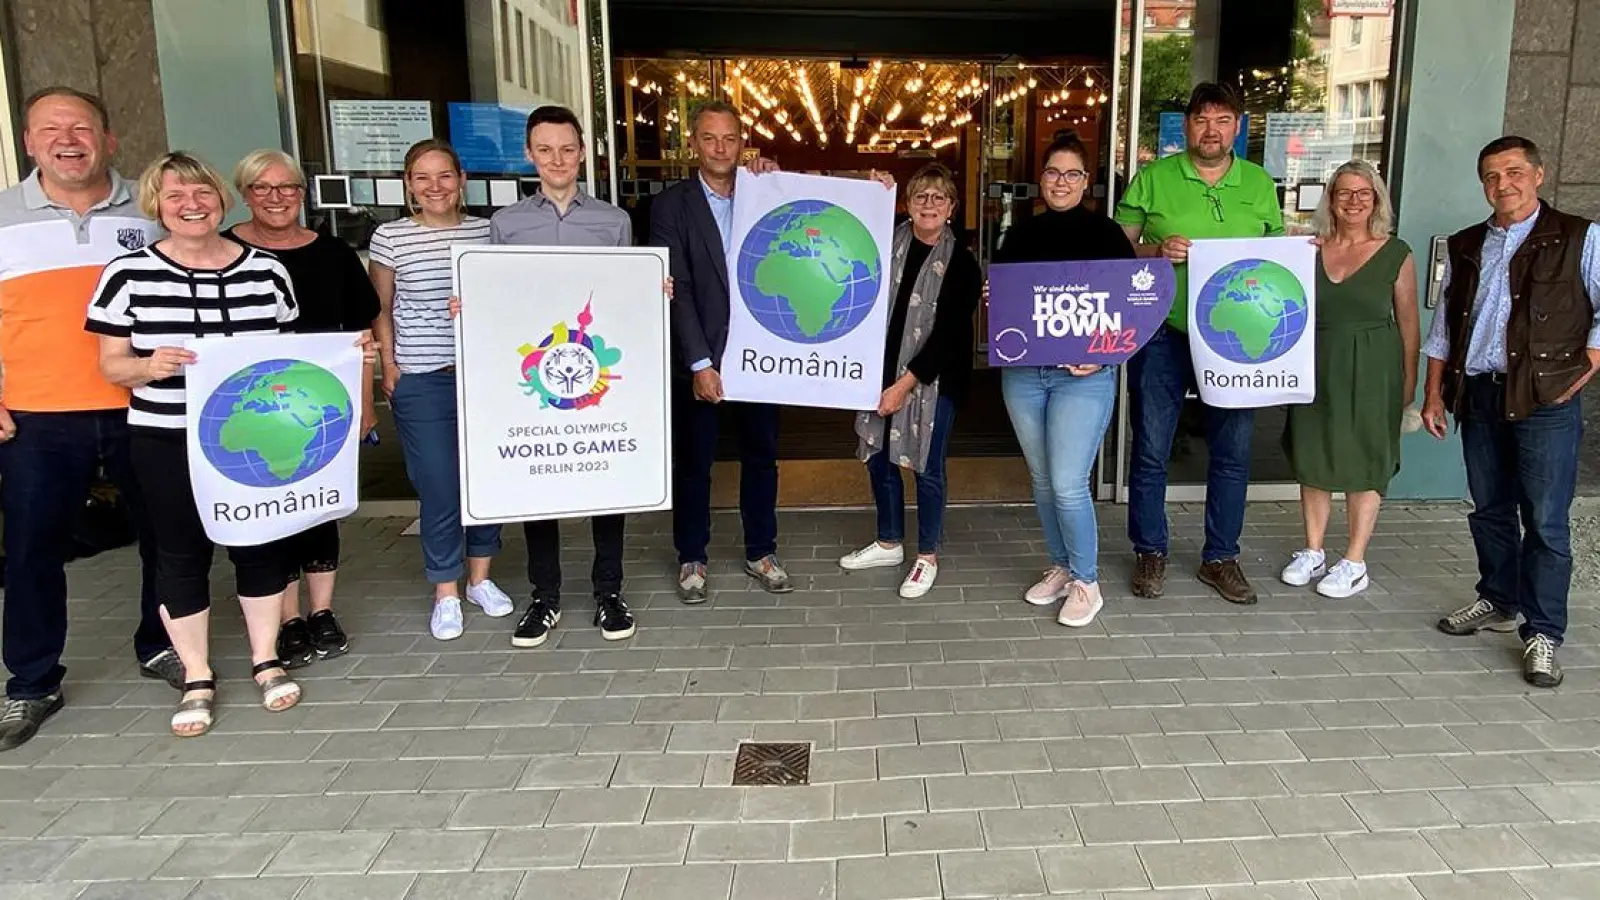 Lokalnachrichten in Bayreuth: Stadt freut sich auf die Delegation aus Rumänien (Foto: red)